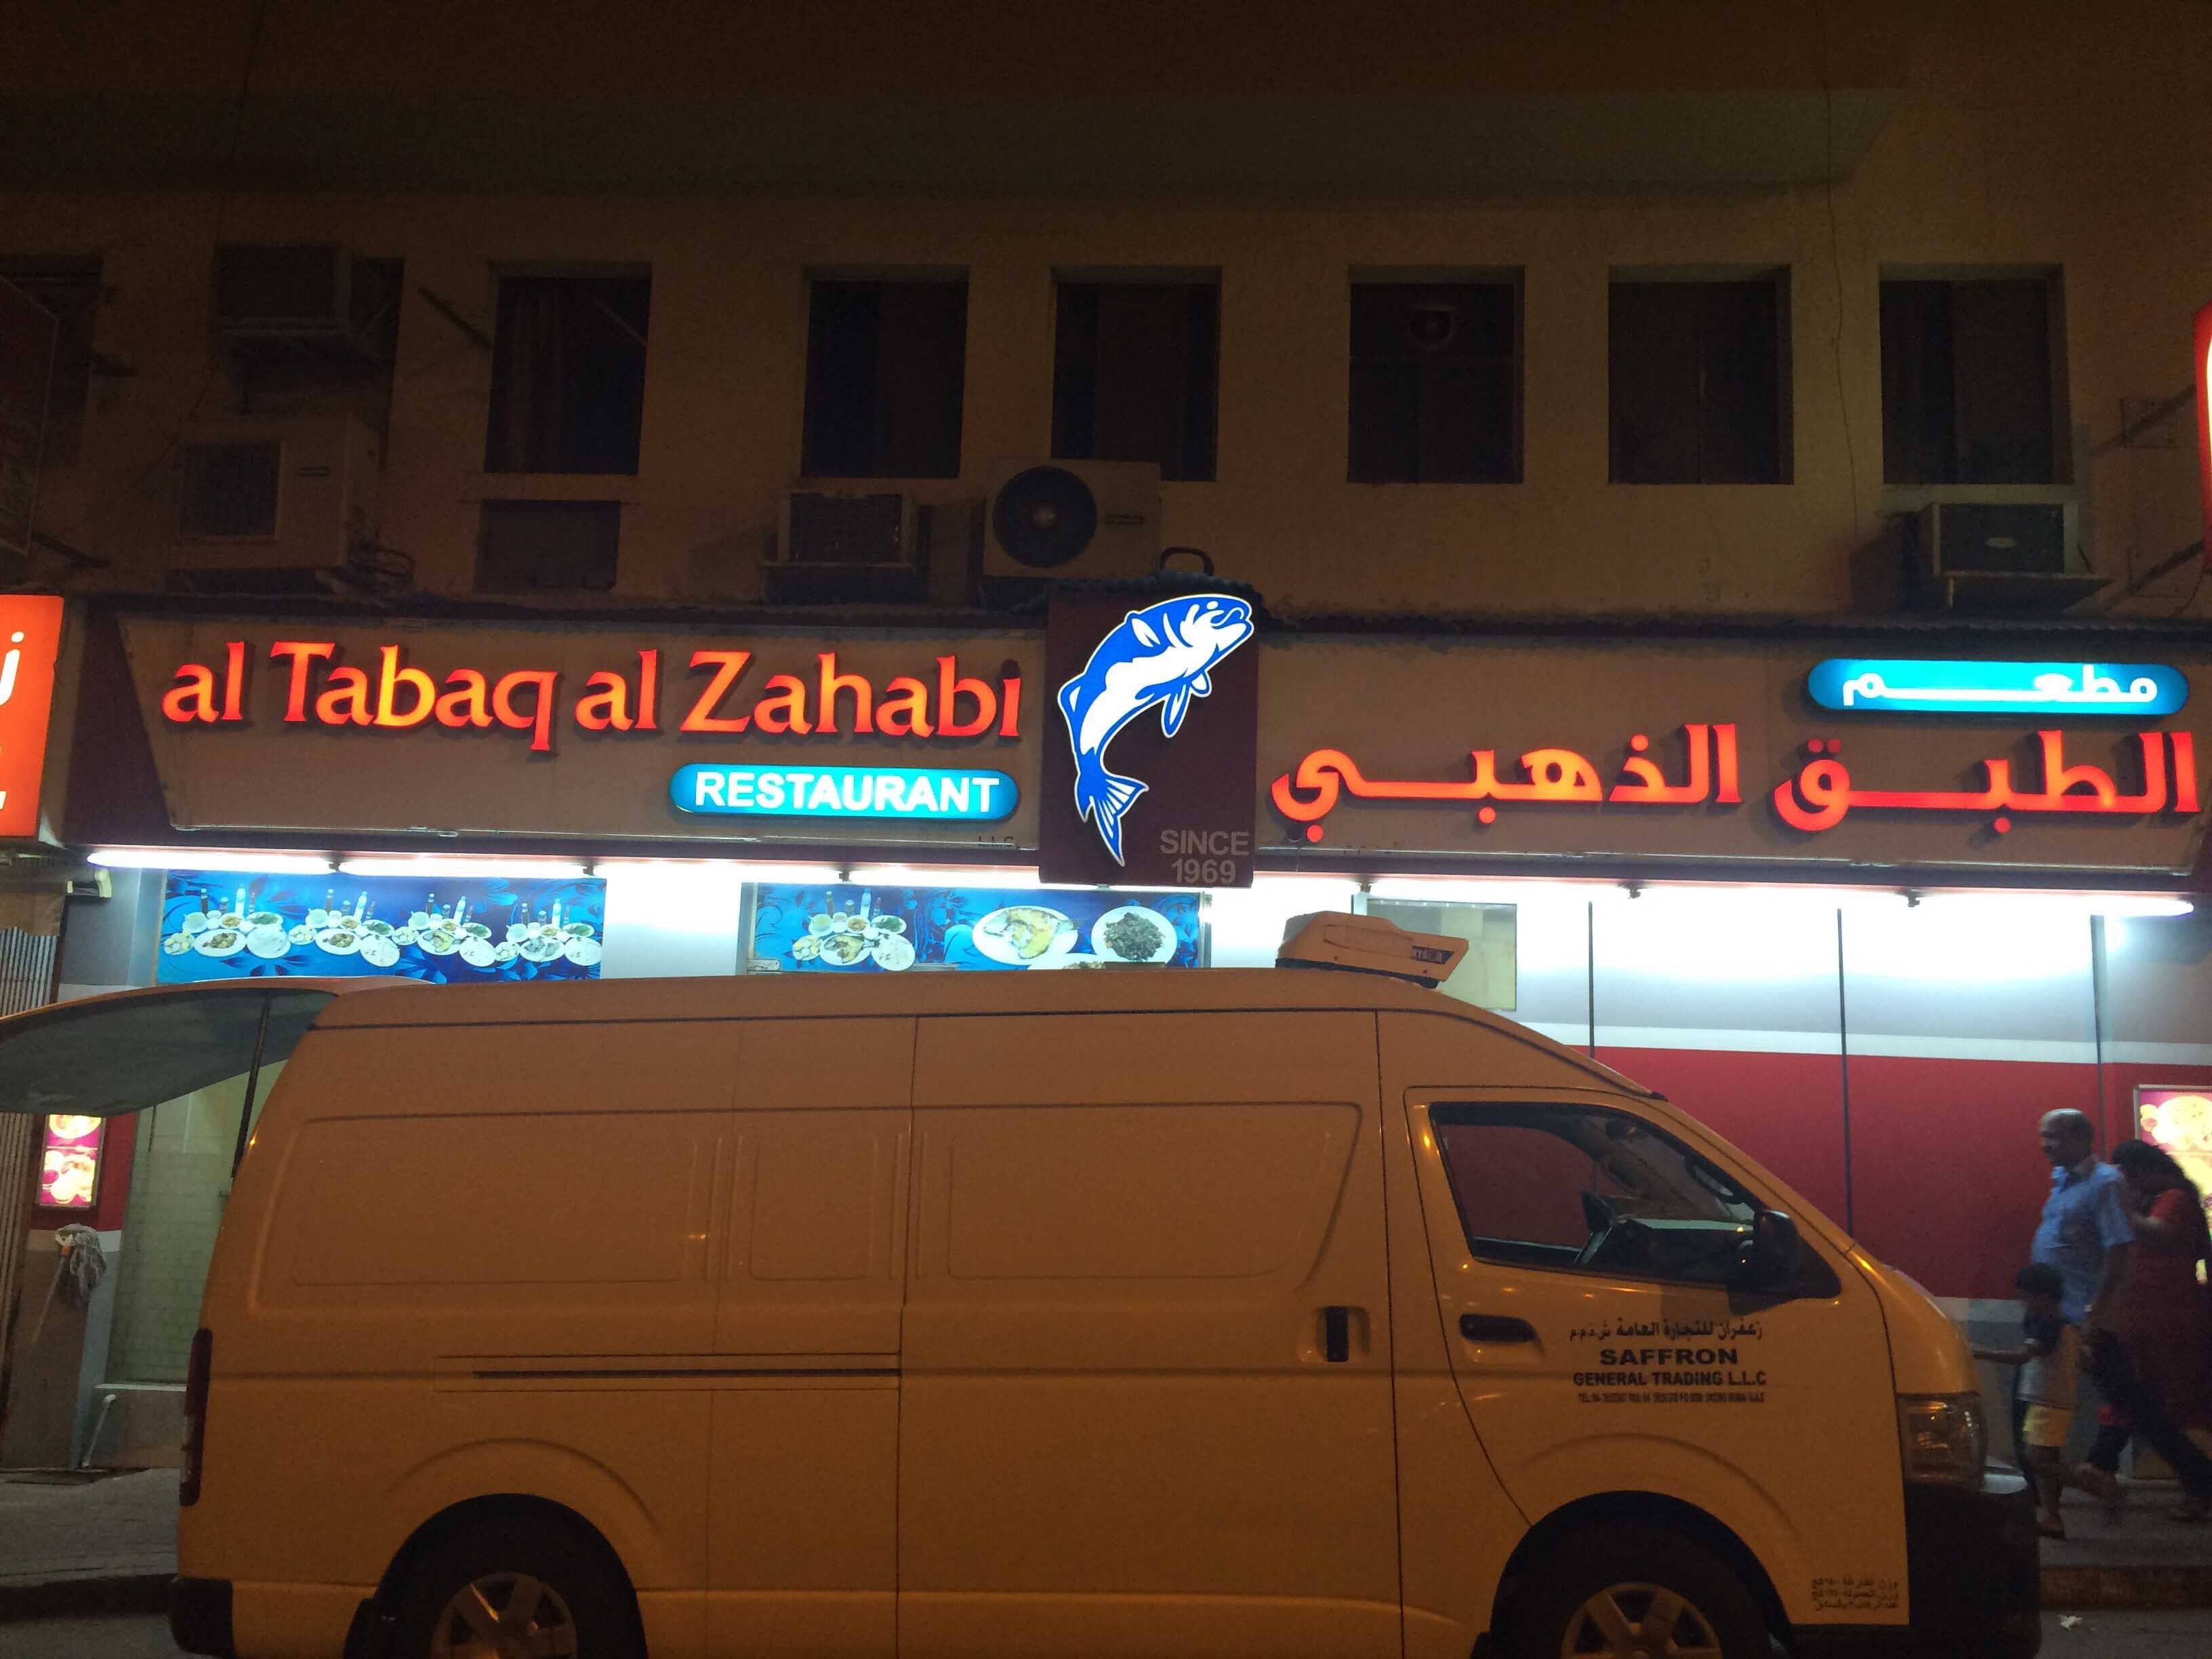 AL TABAQ AL ZAHABI RESTAURANT LLC